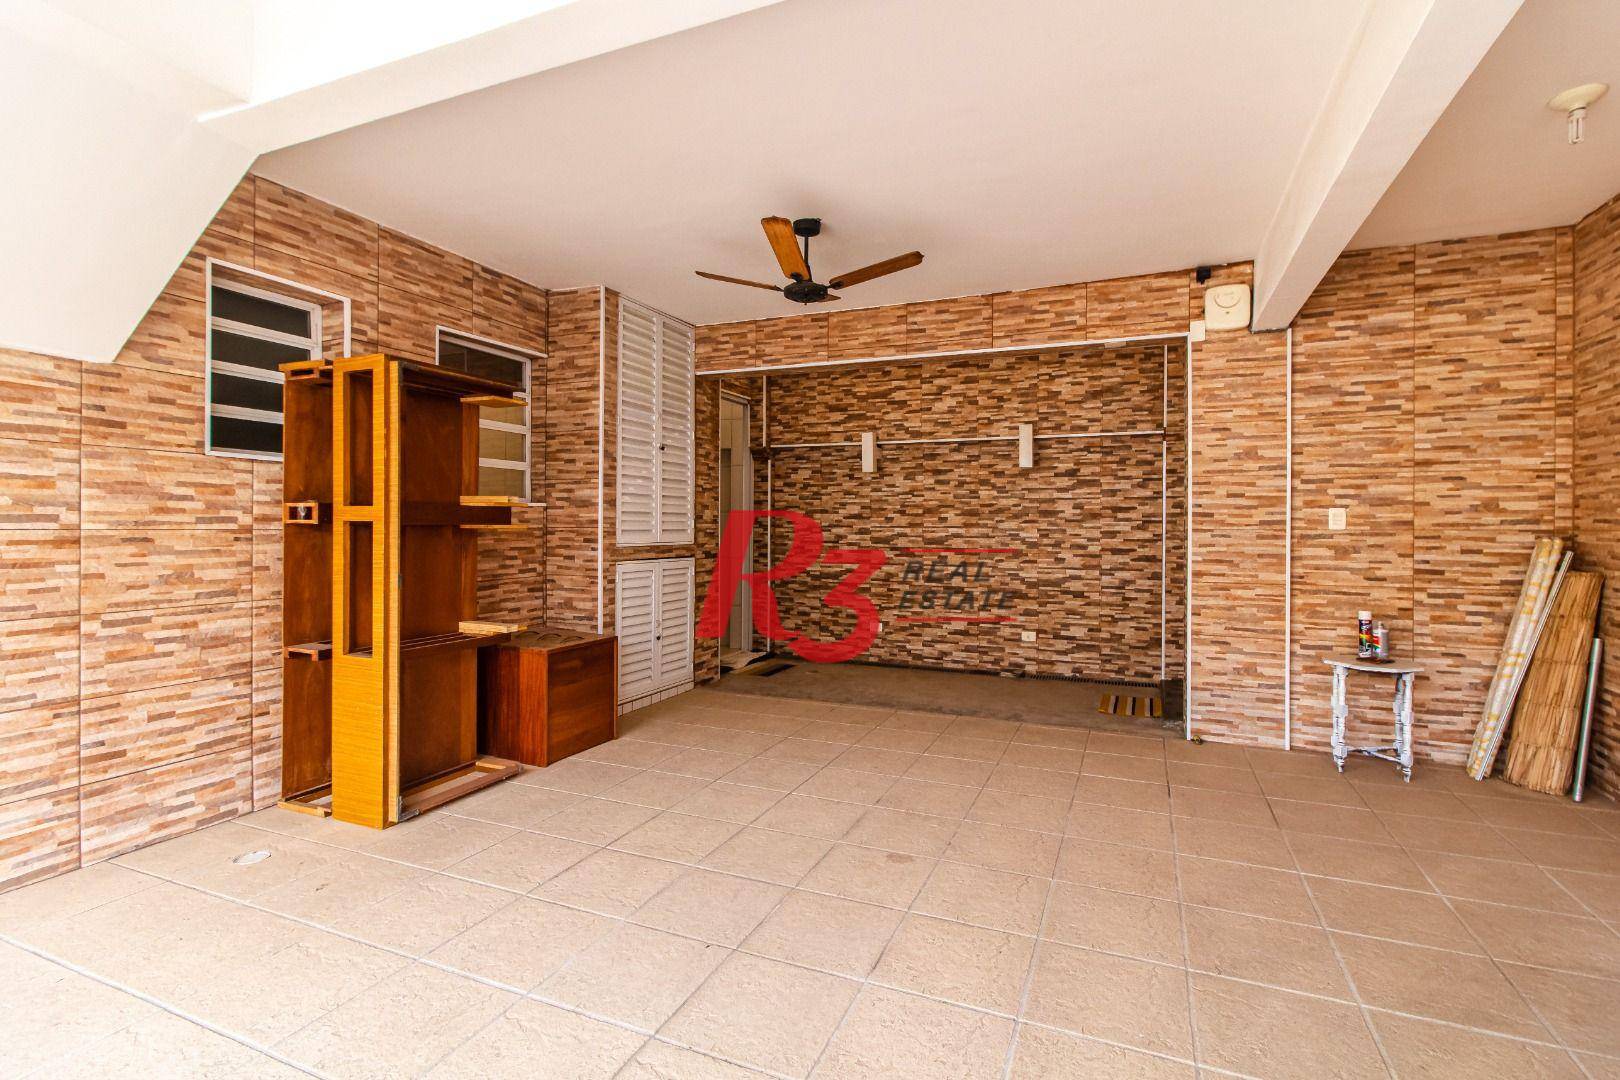 Sobrado duplex para venda ou locação com 3 dormitórios, 120 m² área construída - Aparecida - Santos/SP